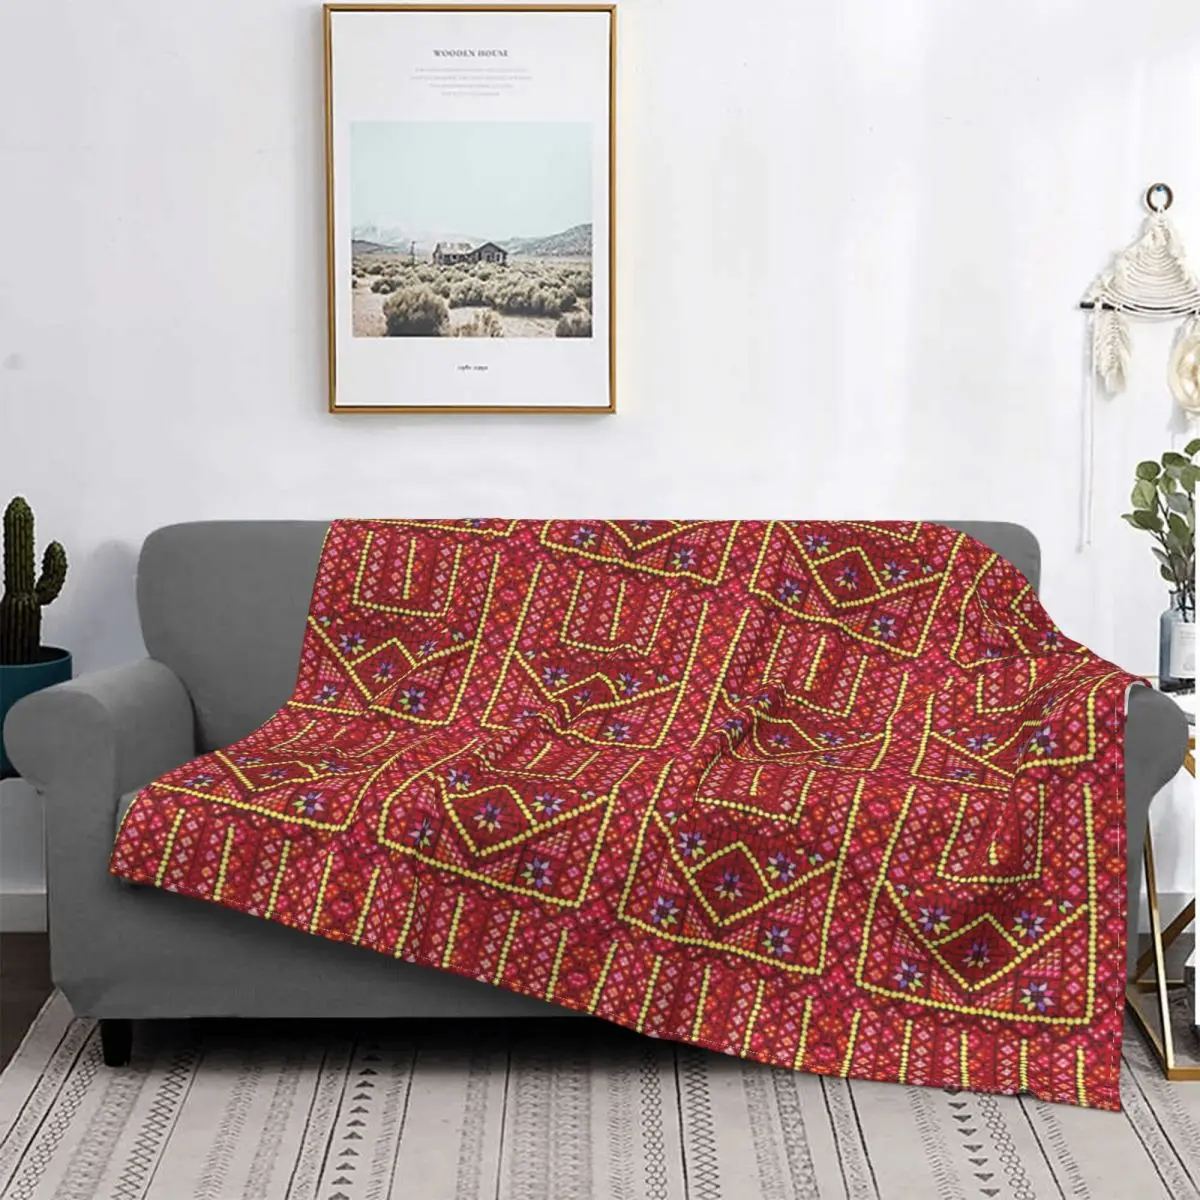 

Красное и цветное искусственное покрывало для кровати, одеяла для дивана, летнее одеяло, домашний текстиль, роскошное